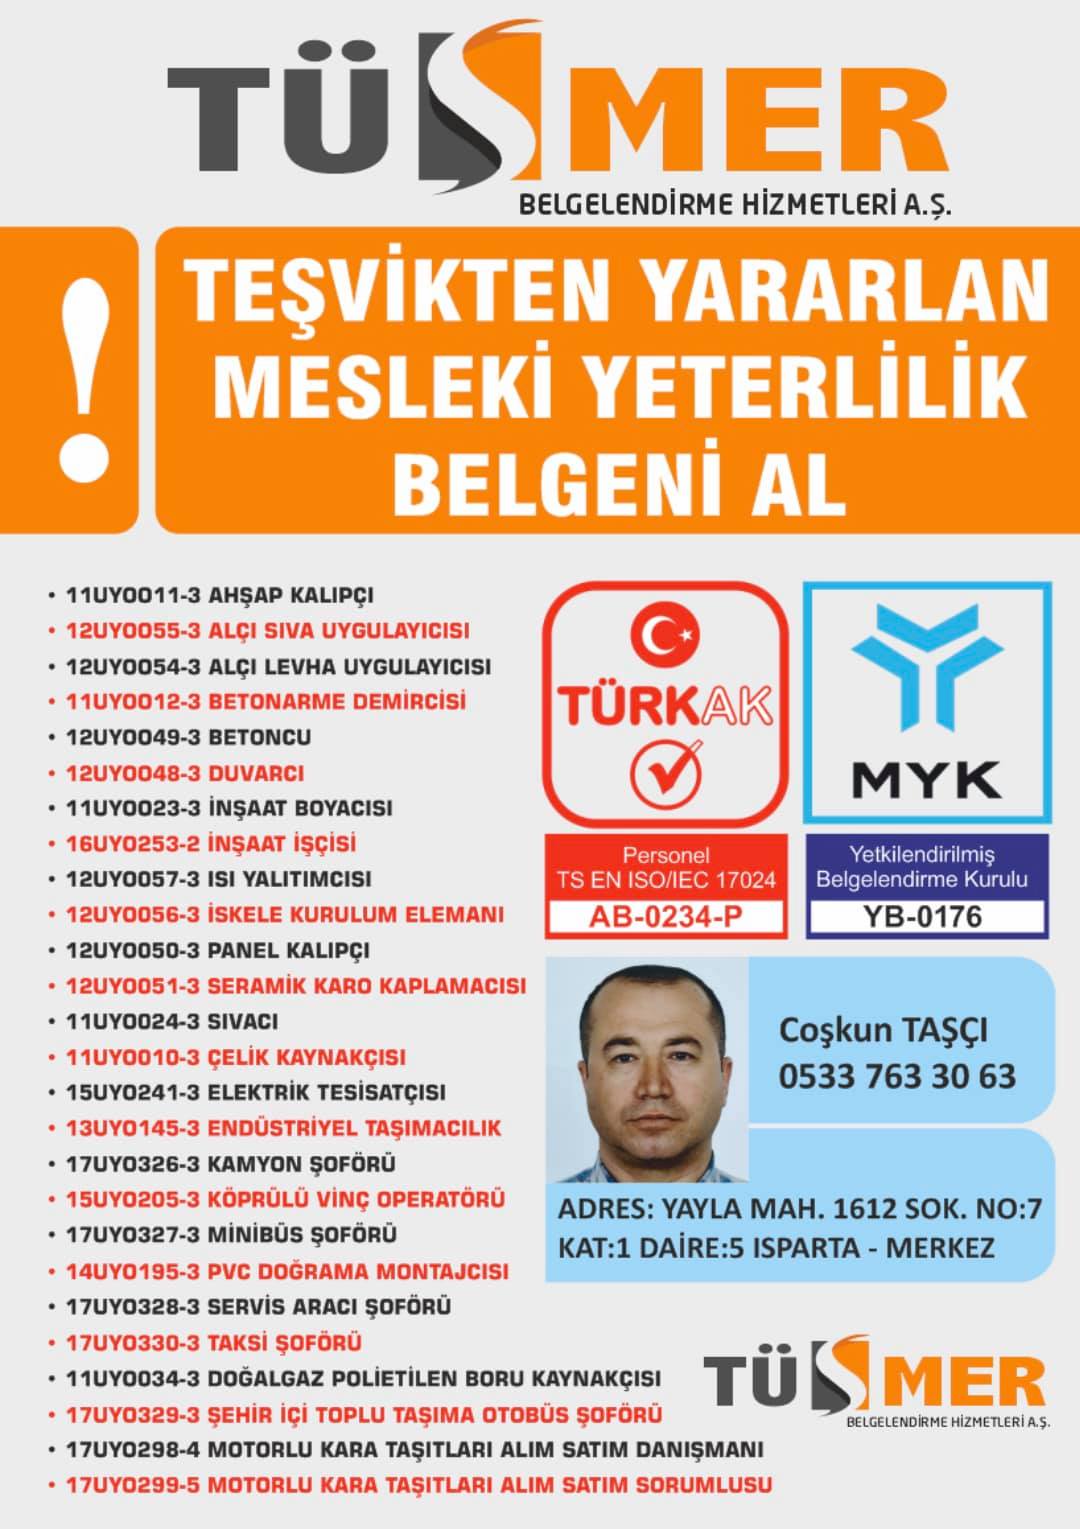 MYK MESLEKİ YETERLİLİK BELGESİ Yıldız Beşiktaş İstanbul